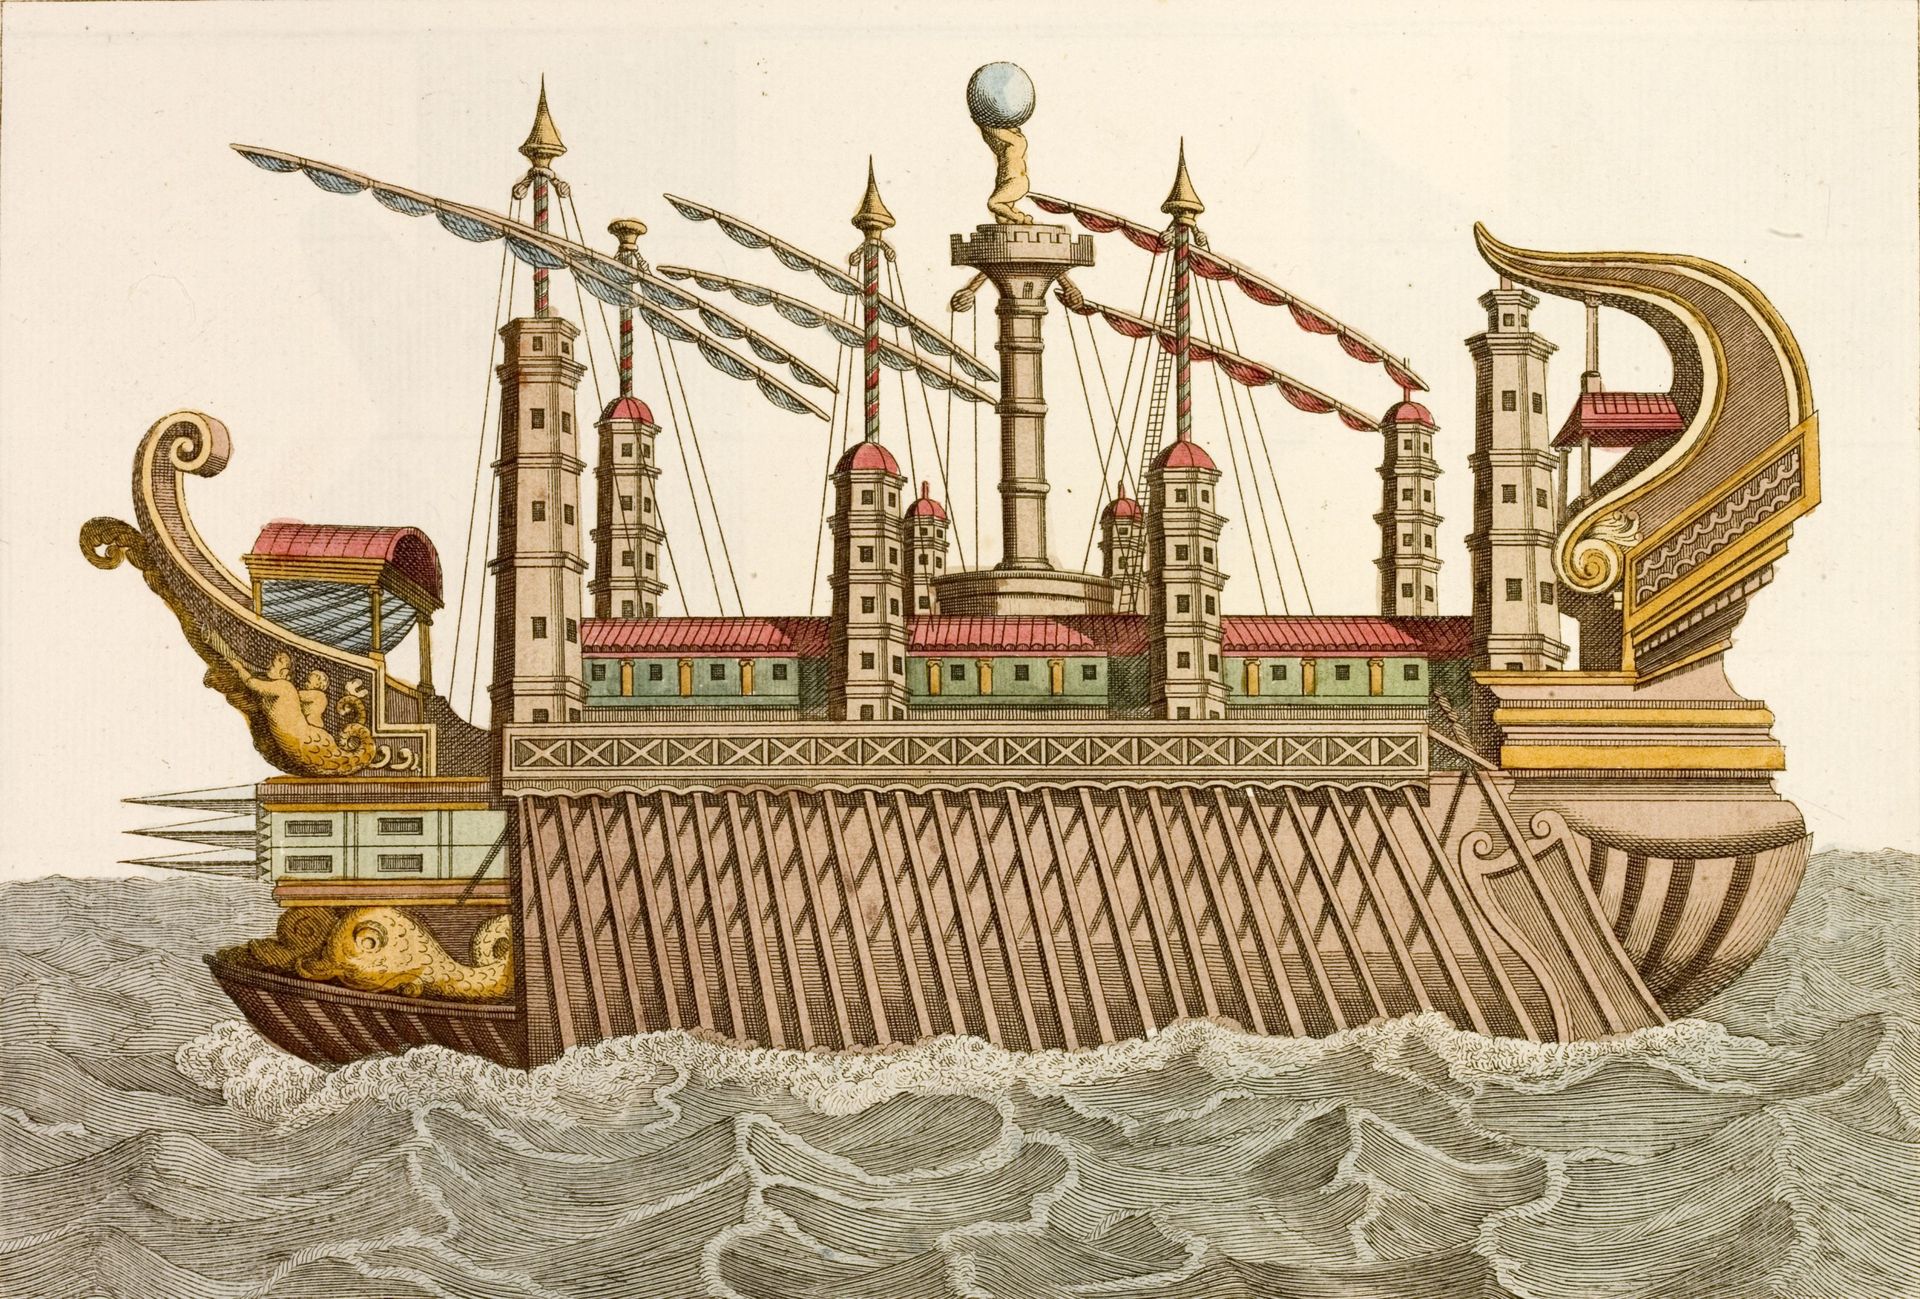 Représentation (du 18e siècle) d’un des bateaux festifs de Caligula